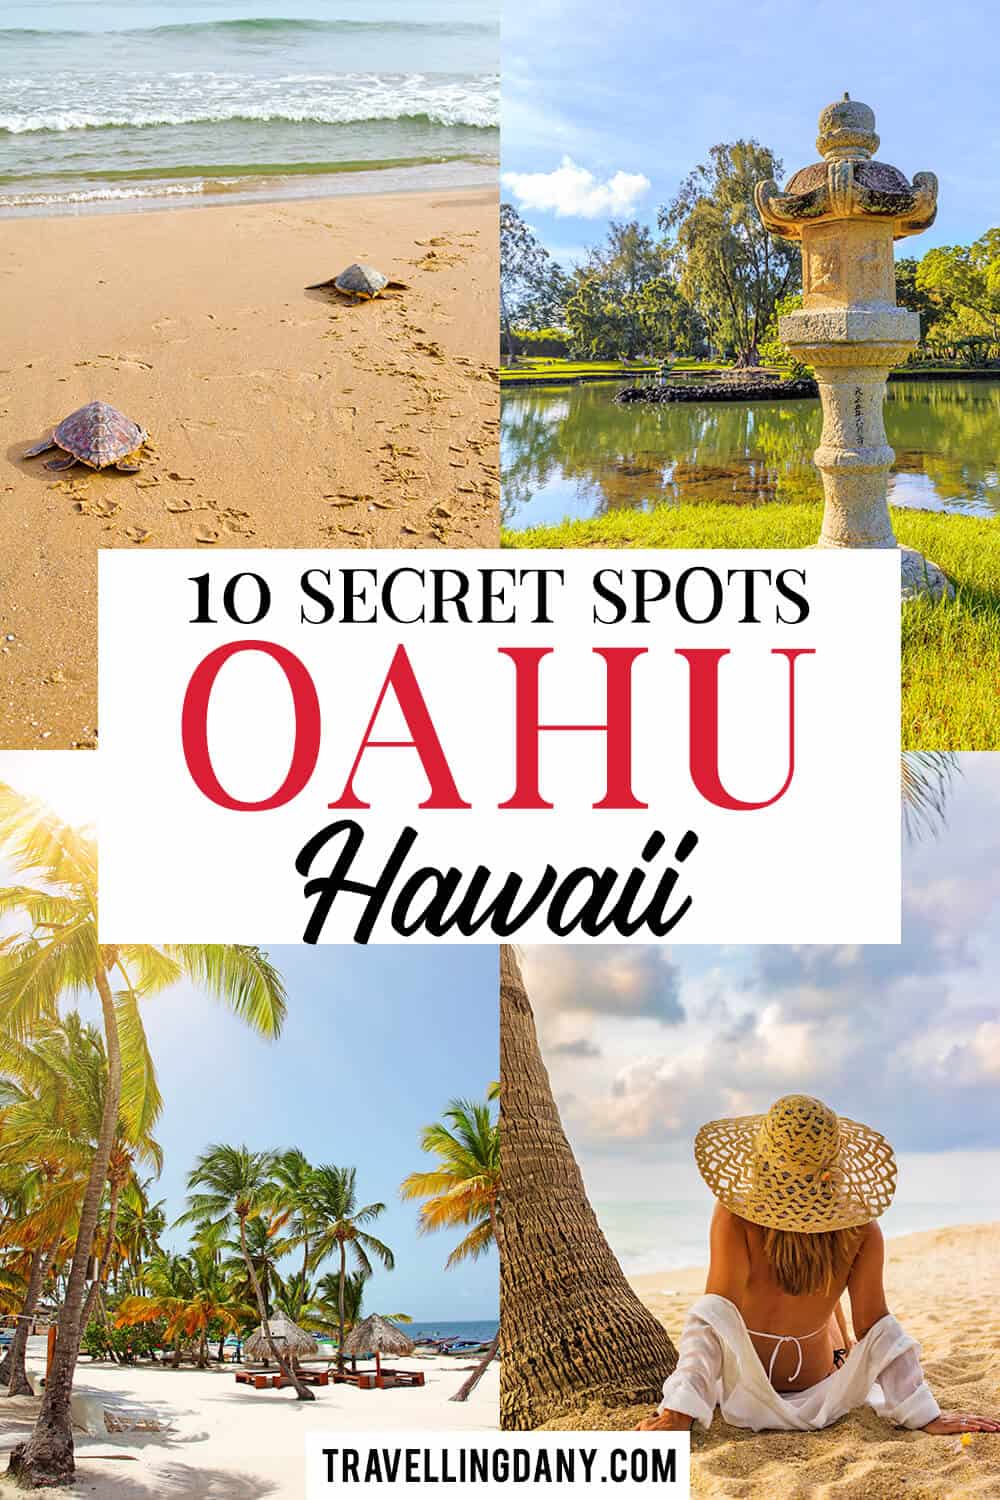 Scopriamo insieme 10 posti da vedere a Oahu lontano dai turisti. In economia, senza folla e senza la necessità di prenotare tour!